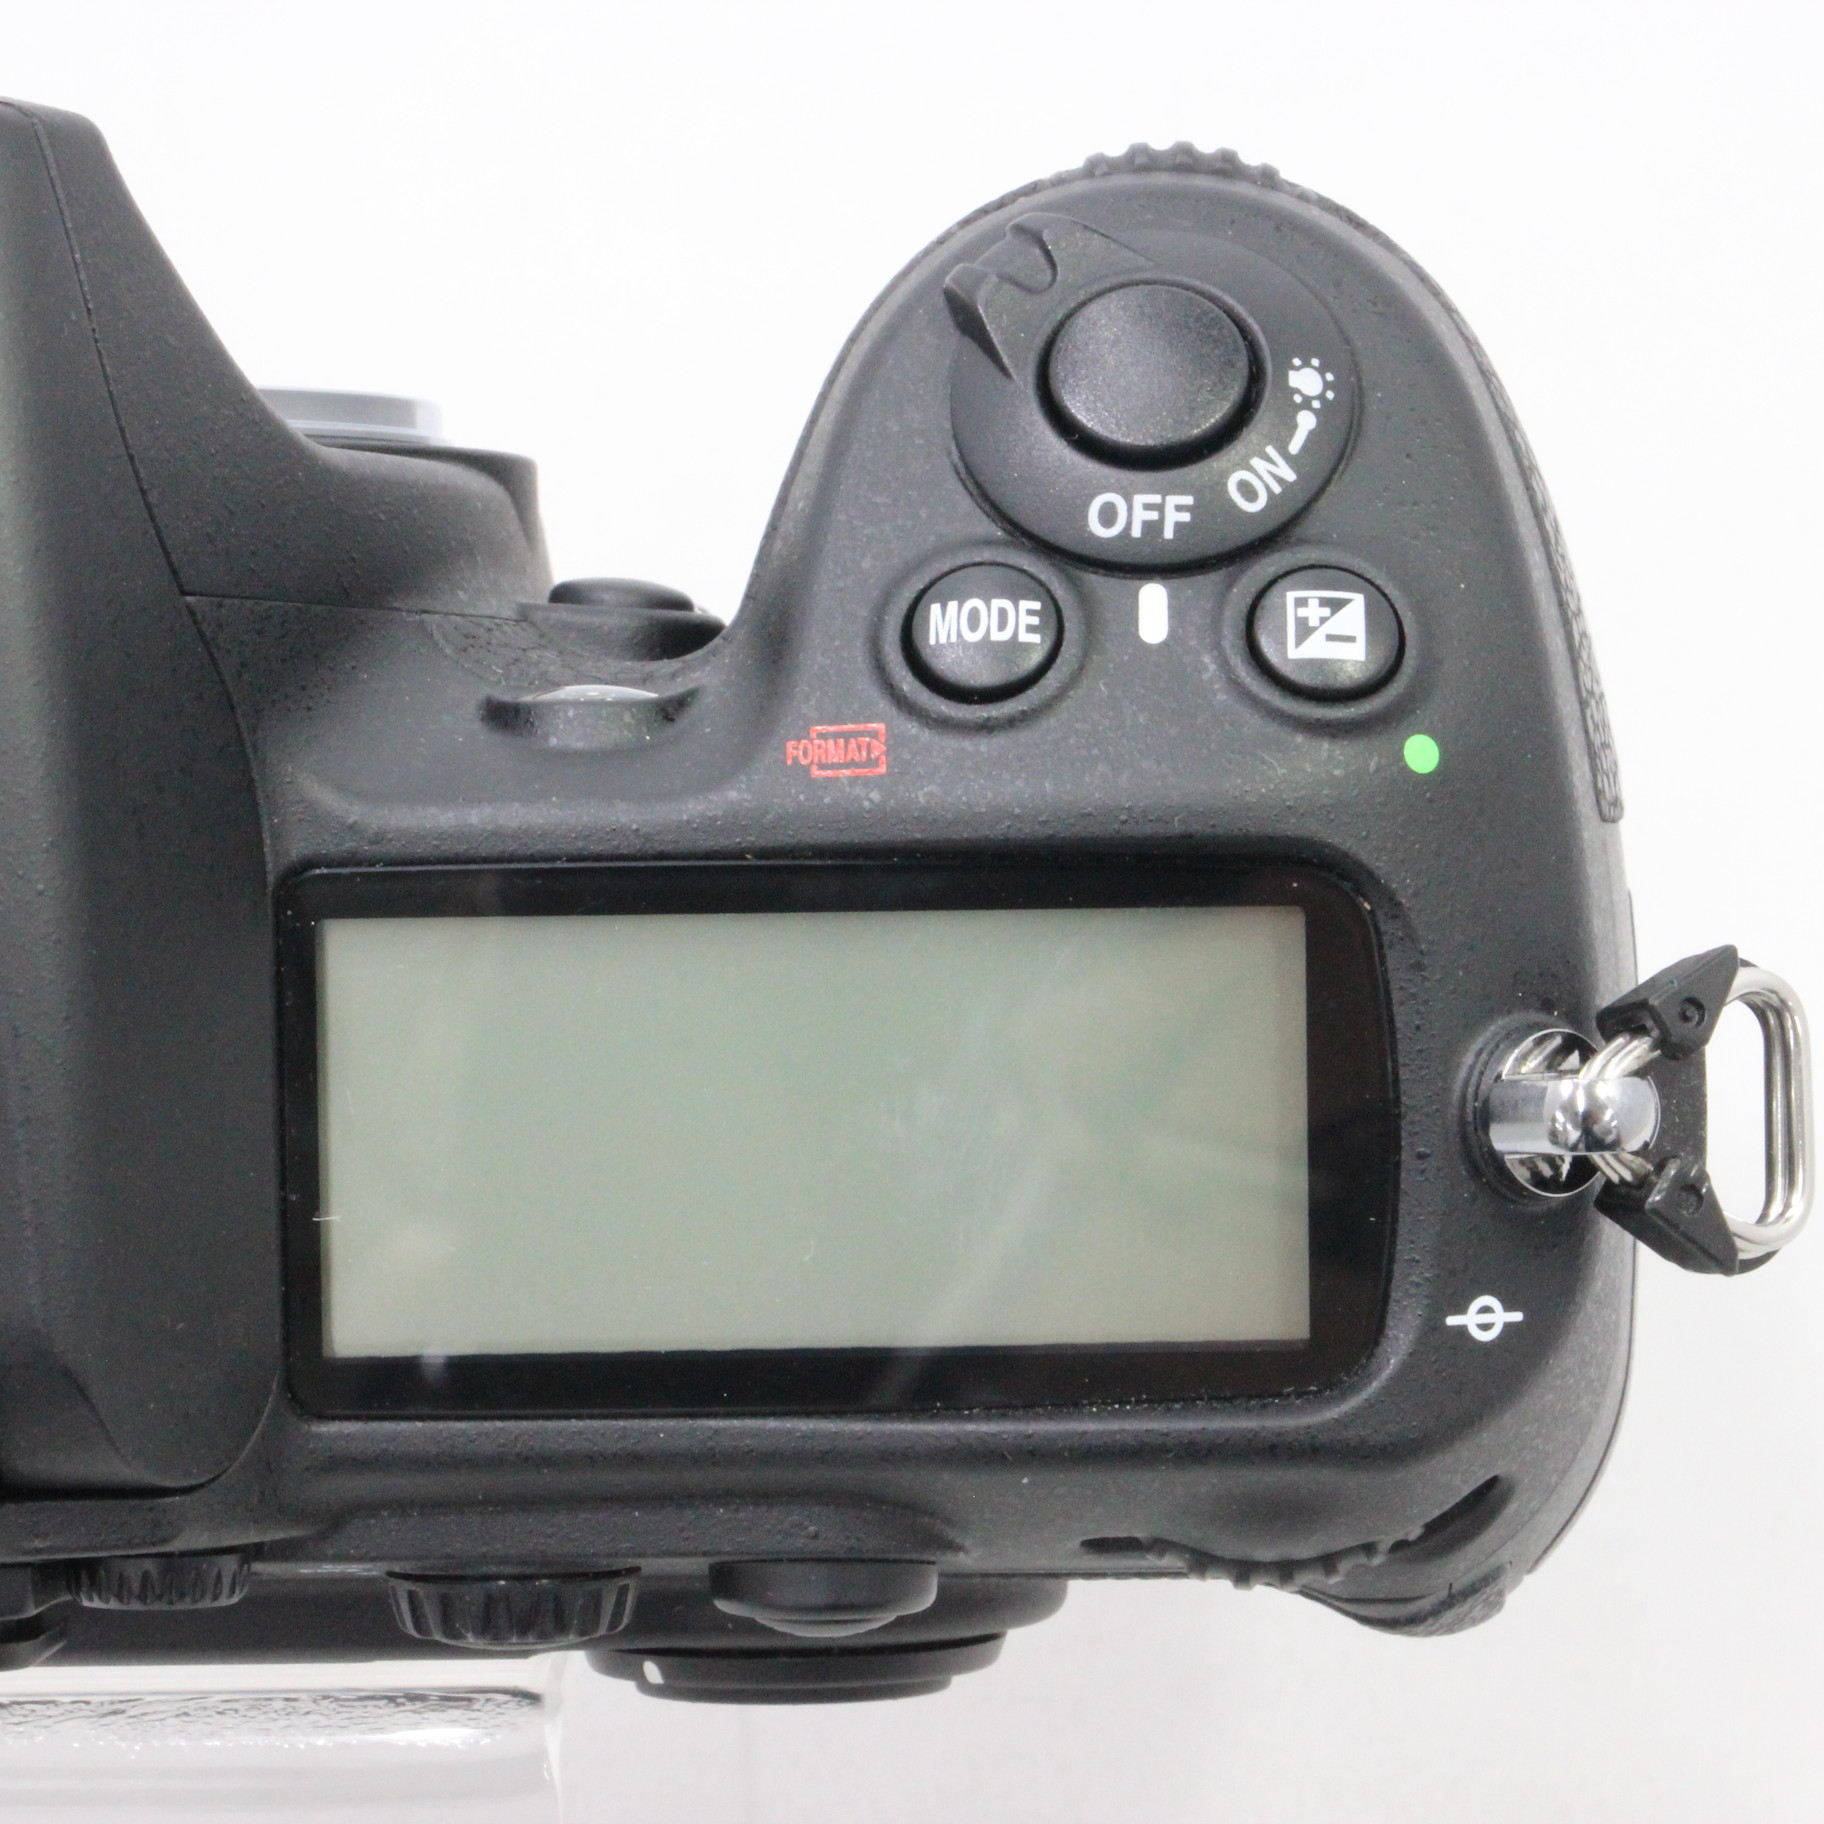 Nikon D300 AF-S DX VR18-200Gレンズキット